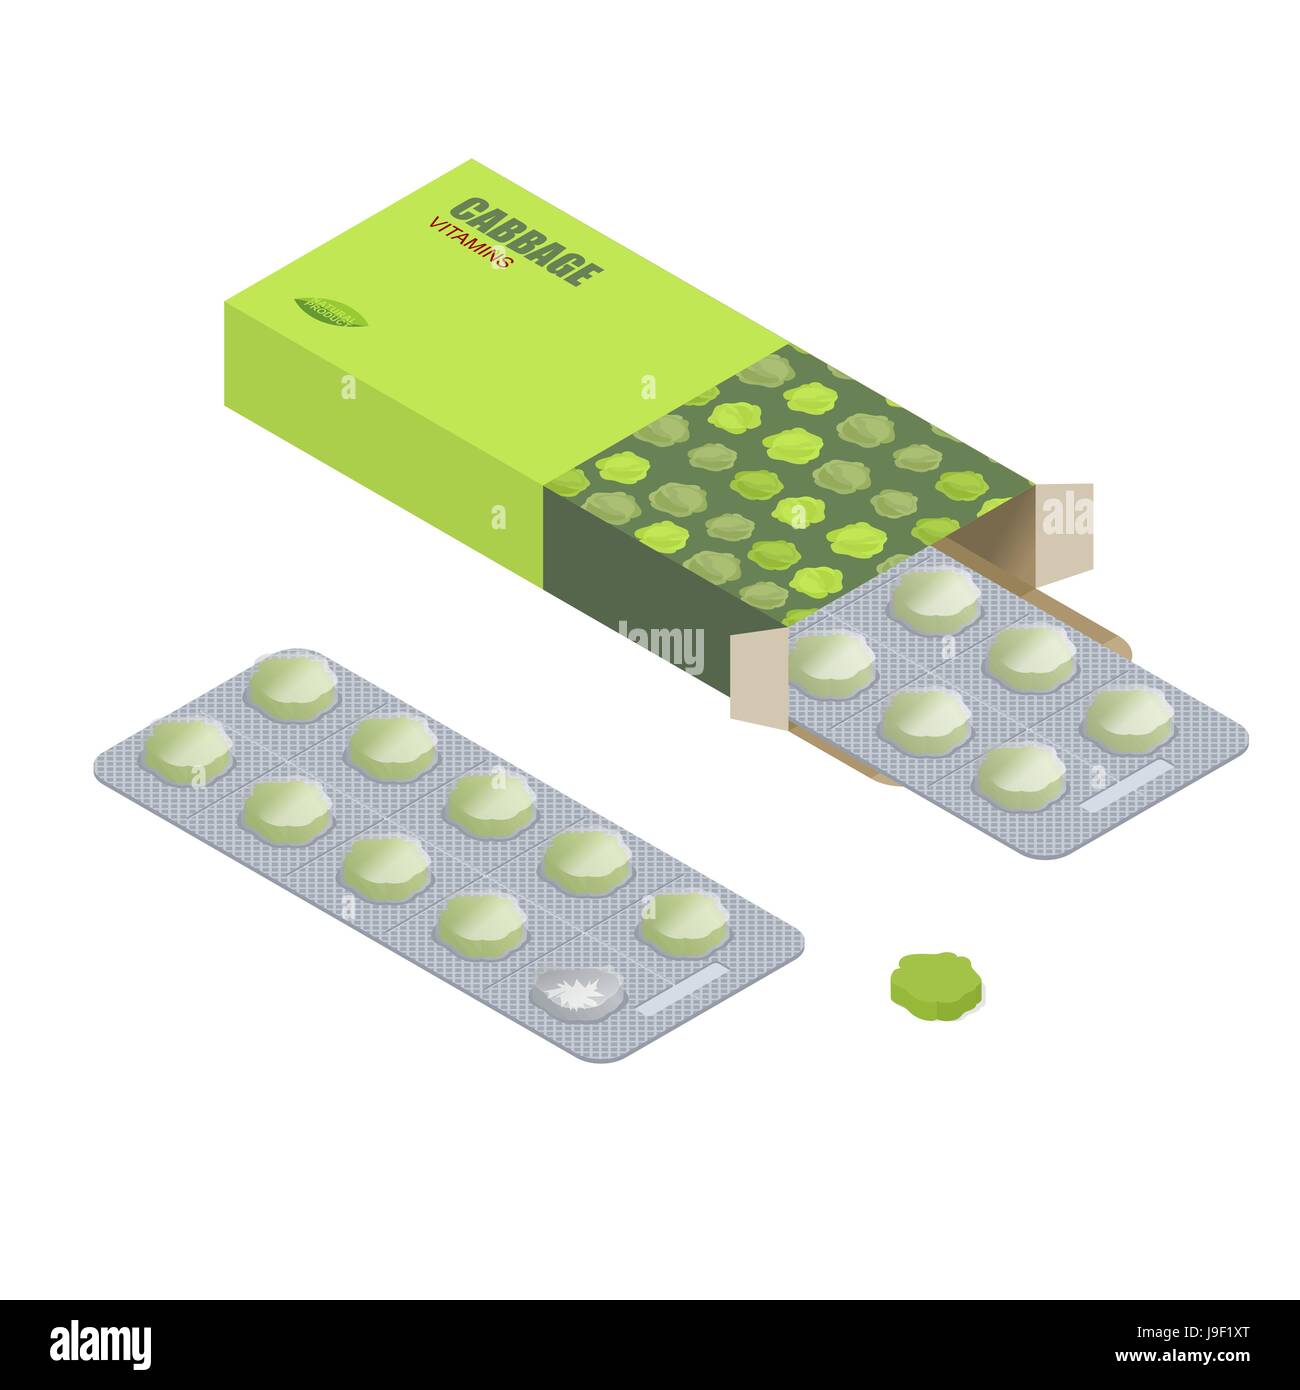 Kohl-Pillen in der Packung. Vegetarische Vitamine. Diät Tabletten.  Natürliche Produkte für Gesundheit in Form von grünen Kohl. Medikament  pflanzlich. Medizinische Medikament Stock-Vektorgrafik - Alamy